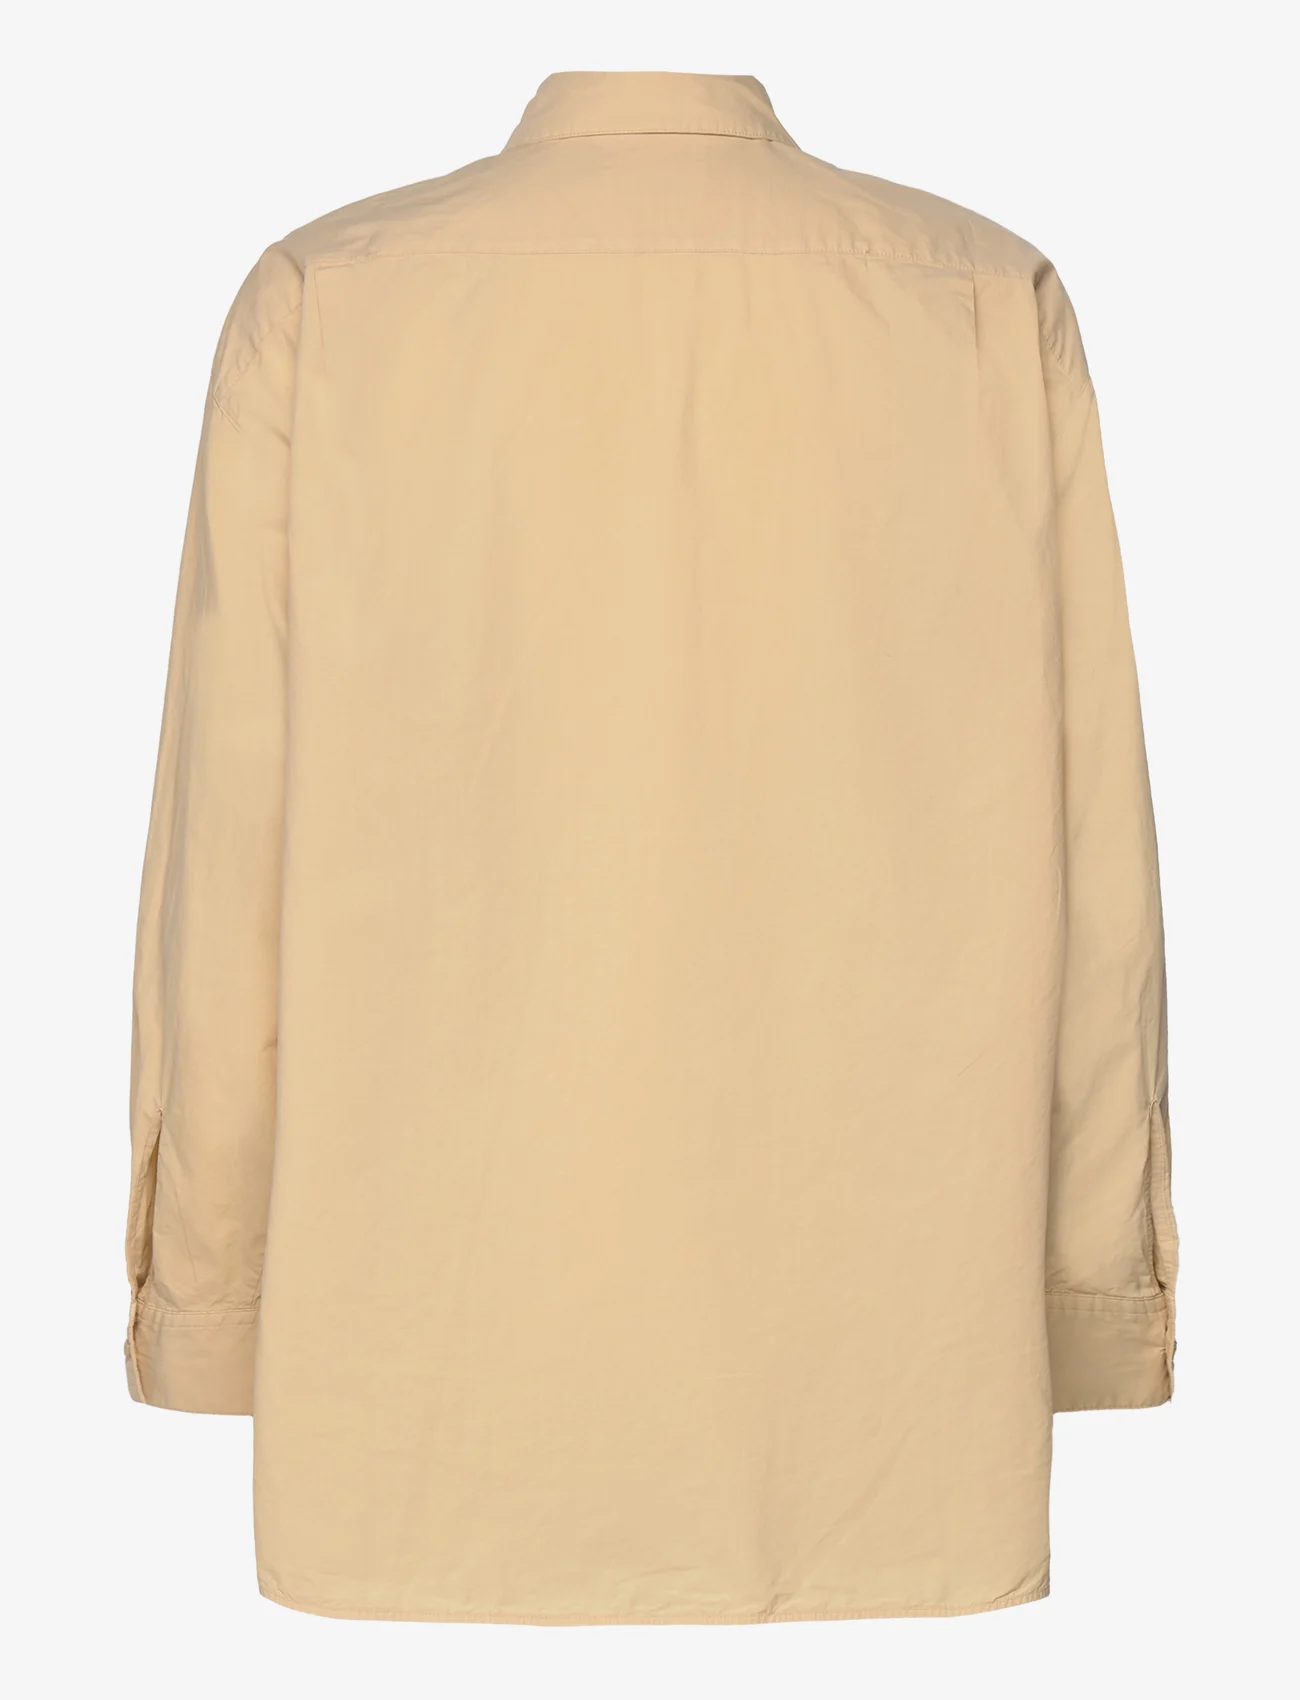 Marimekko - GRISTE SOLID - long-sleeved shirts - beige - 1